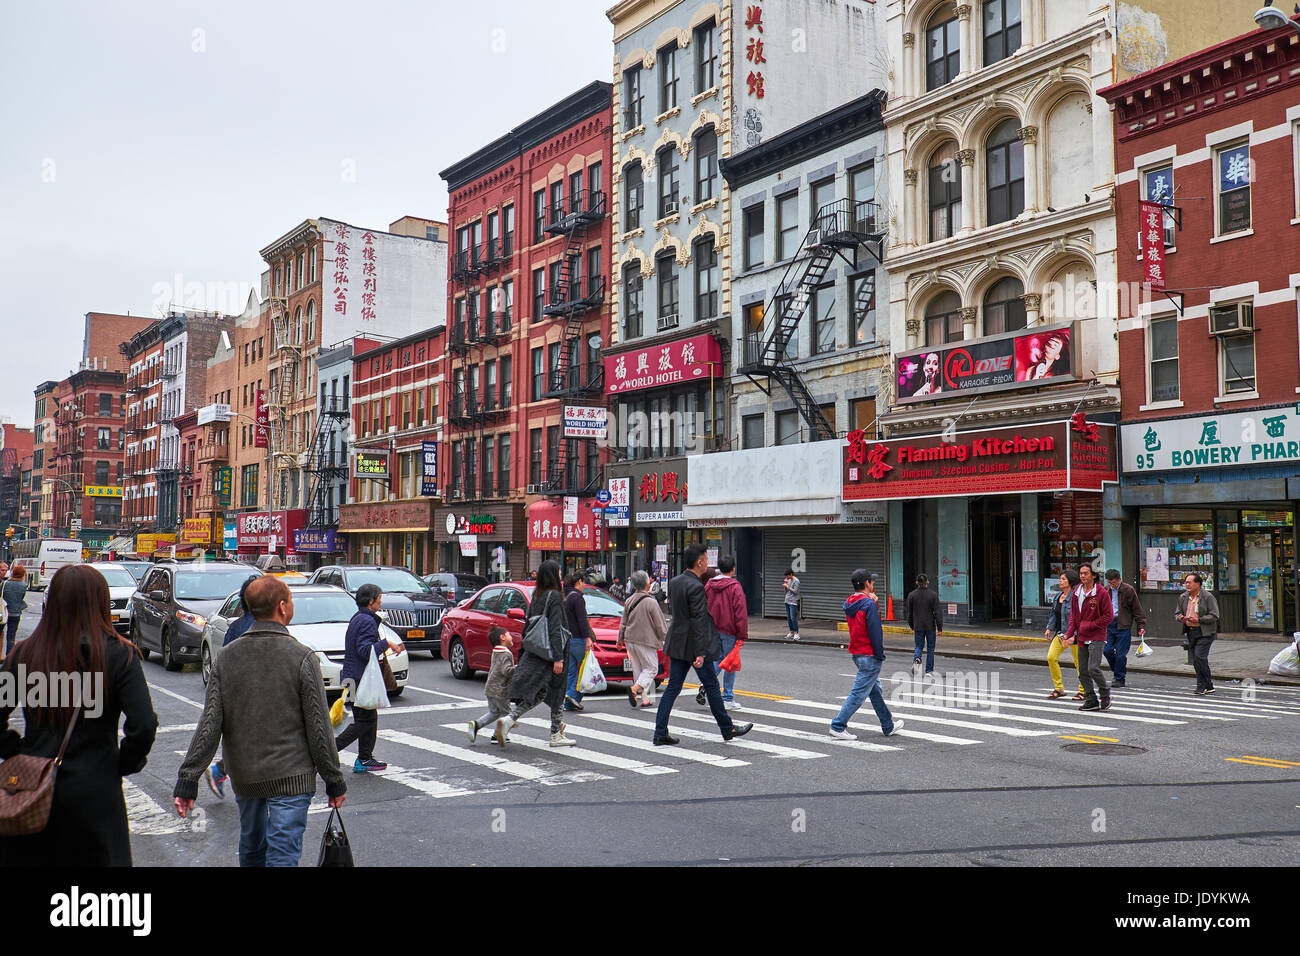 NEW YORK - 02 octobre 2016 : Balade dans un passage pour piétons à l'angle de Bowery Street dans le quartier chinois et de Cheste Banque D'Images